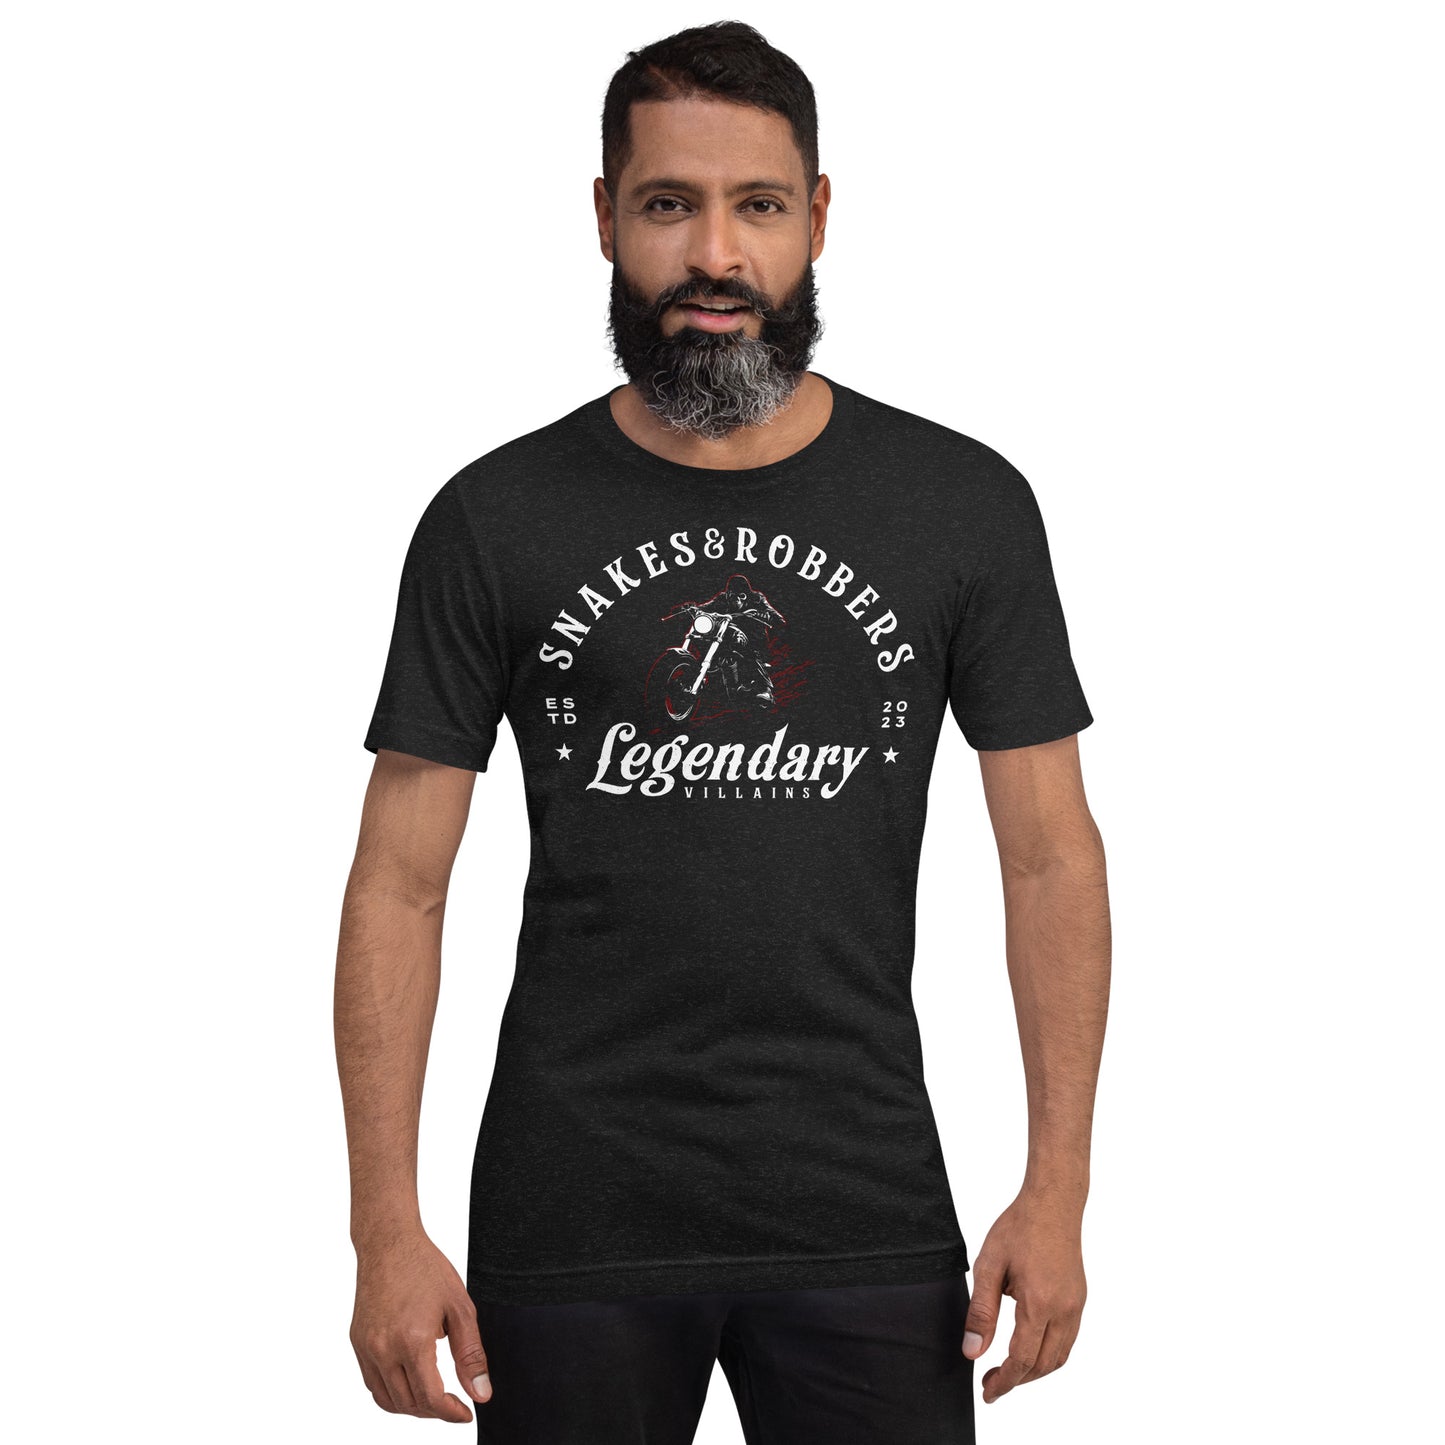 Legendary Villains Unisex Retail Fit T-shirt